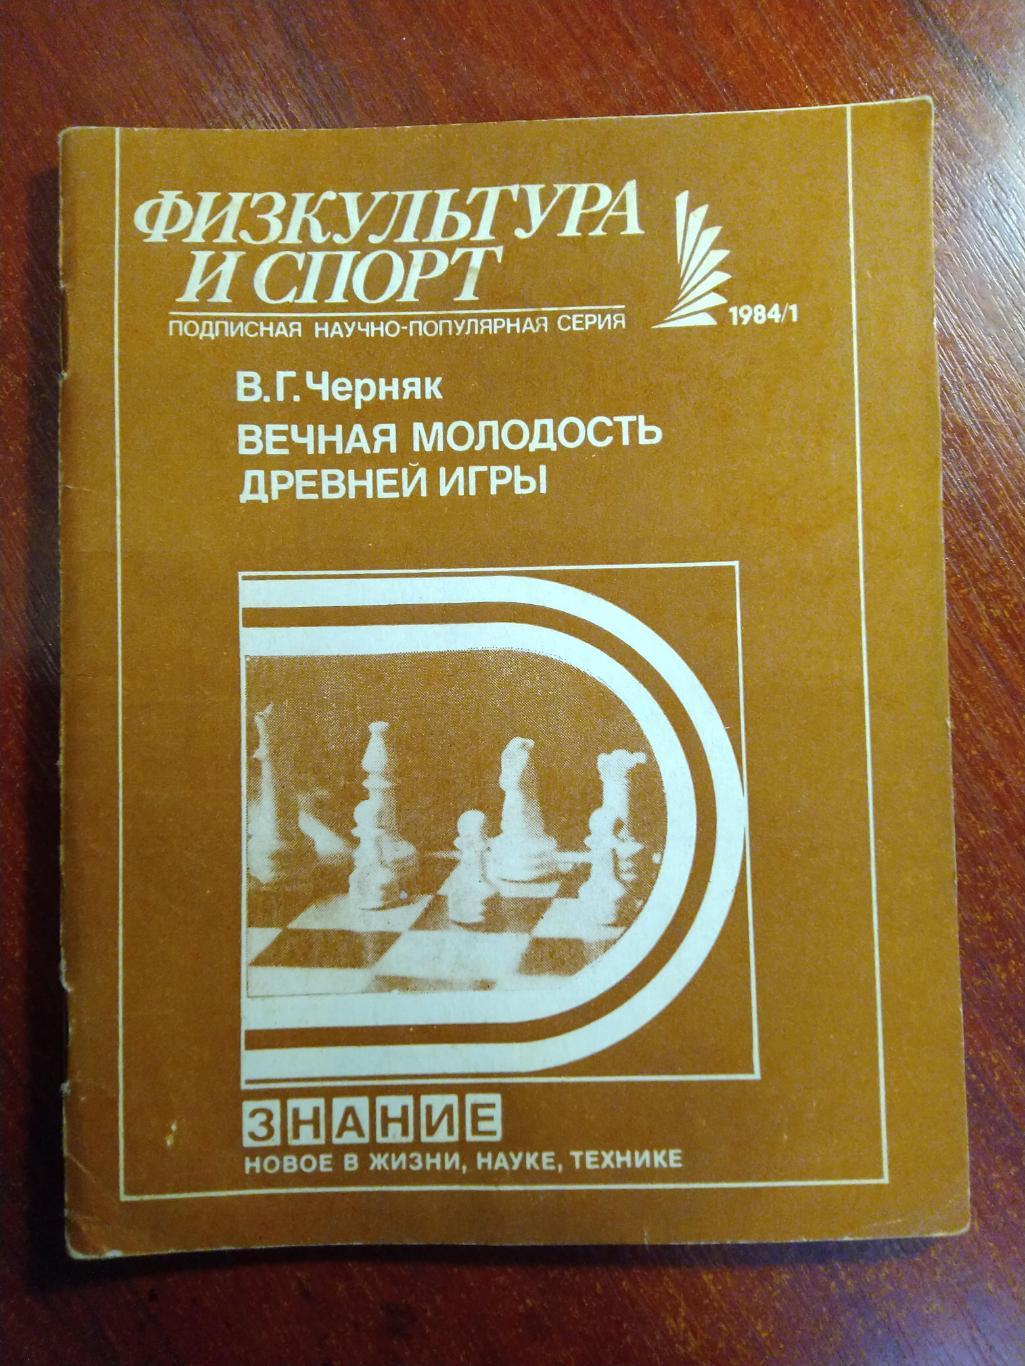 Серия Физкультура и спорт 1984 №1 Вечная молодость древней игры